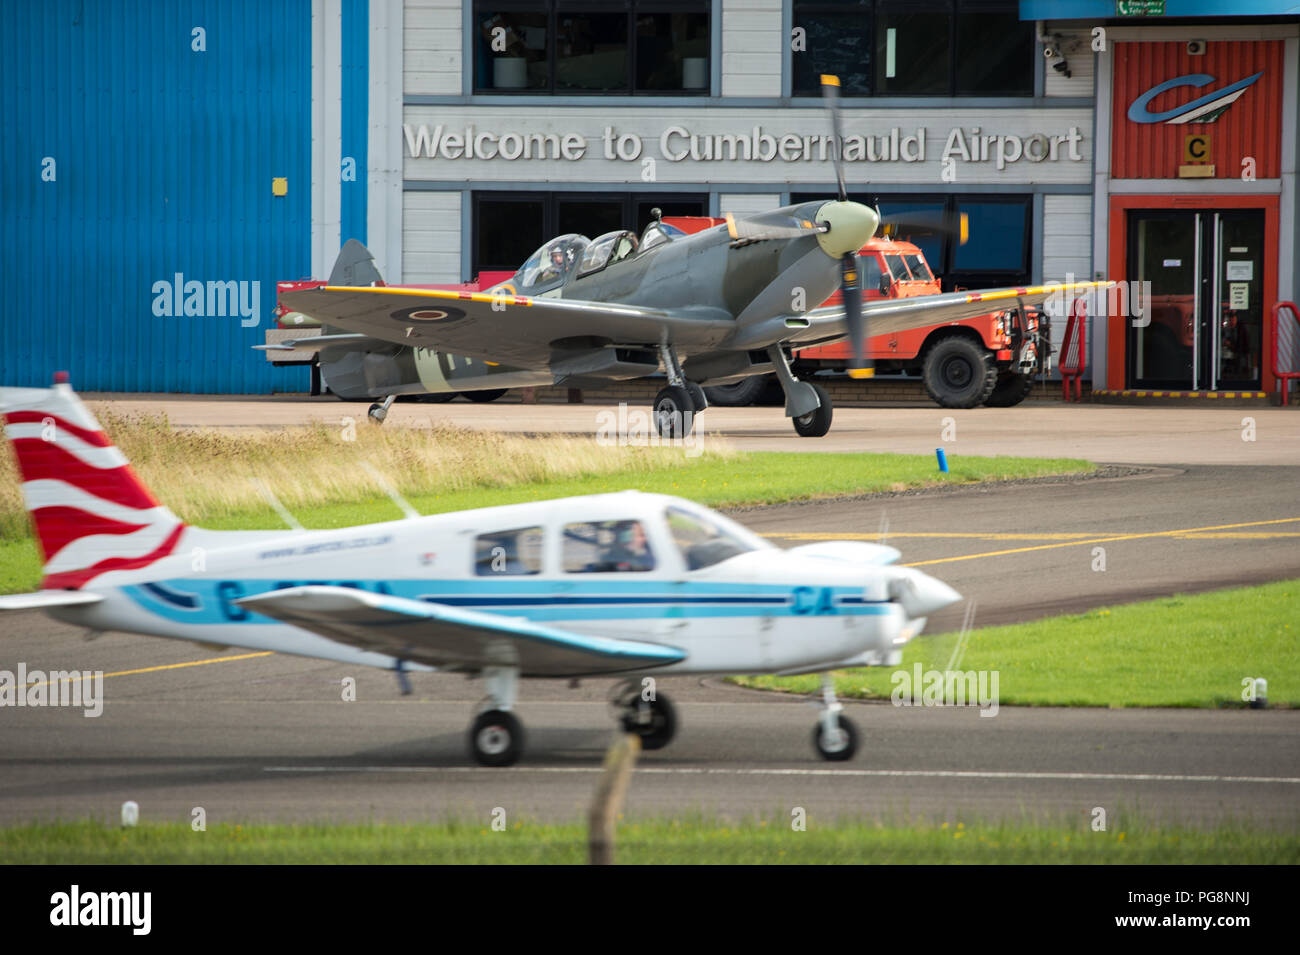 Cumbernauld, Scotland, Regno Unito. 24 ago 2018. Speciale voli Spitfire a Cumbernauld Airport, Cumbernauld, Scotland, Regno Unito - 24 agosto 2018 Credit: Colin Fisher/Alamy Live News Foto Stock